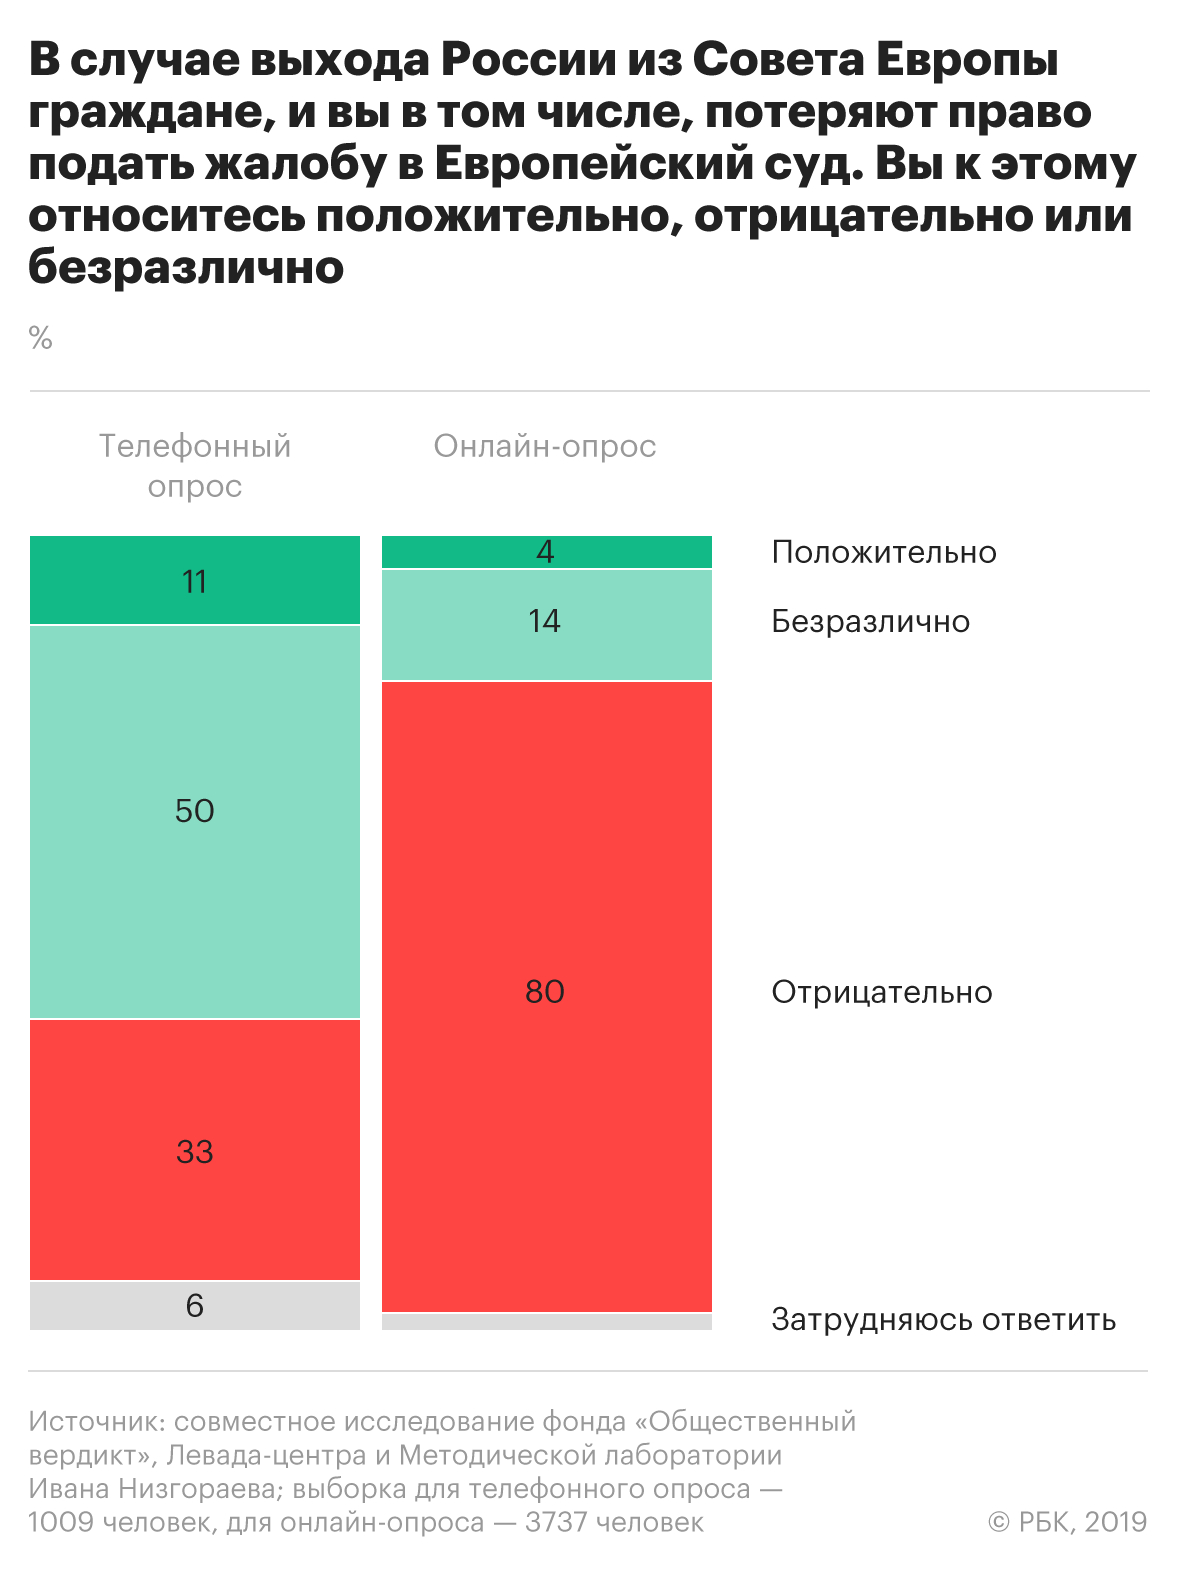 Более 80% россиян назвали членство в Совете Европы важным для России